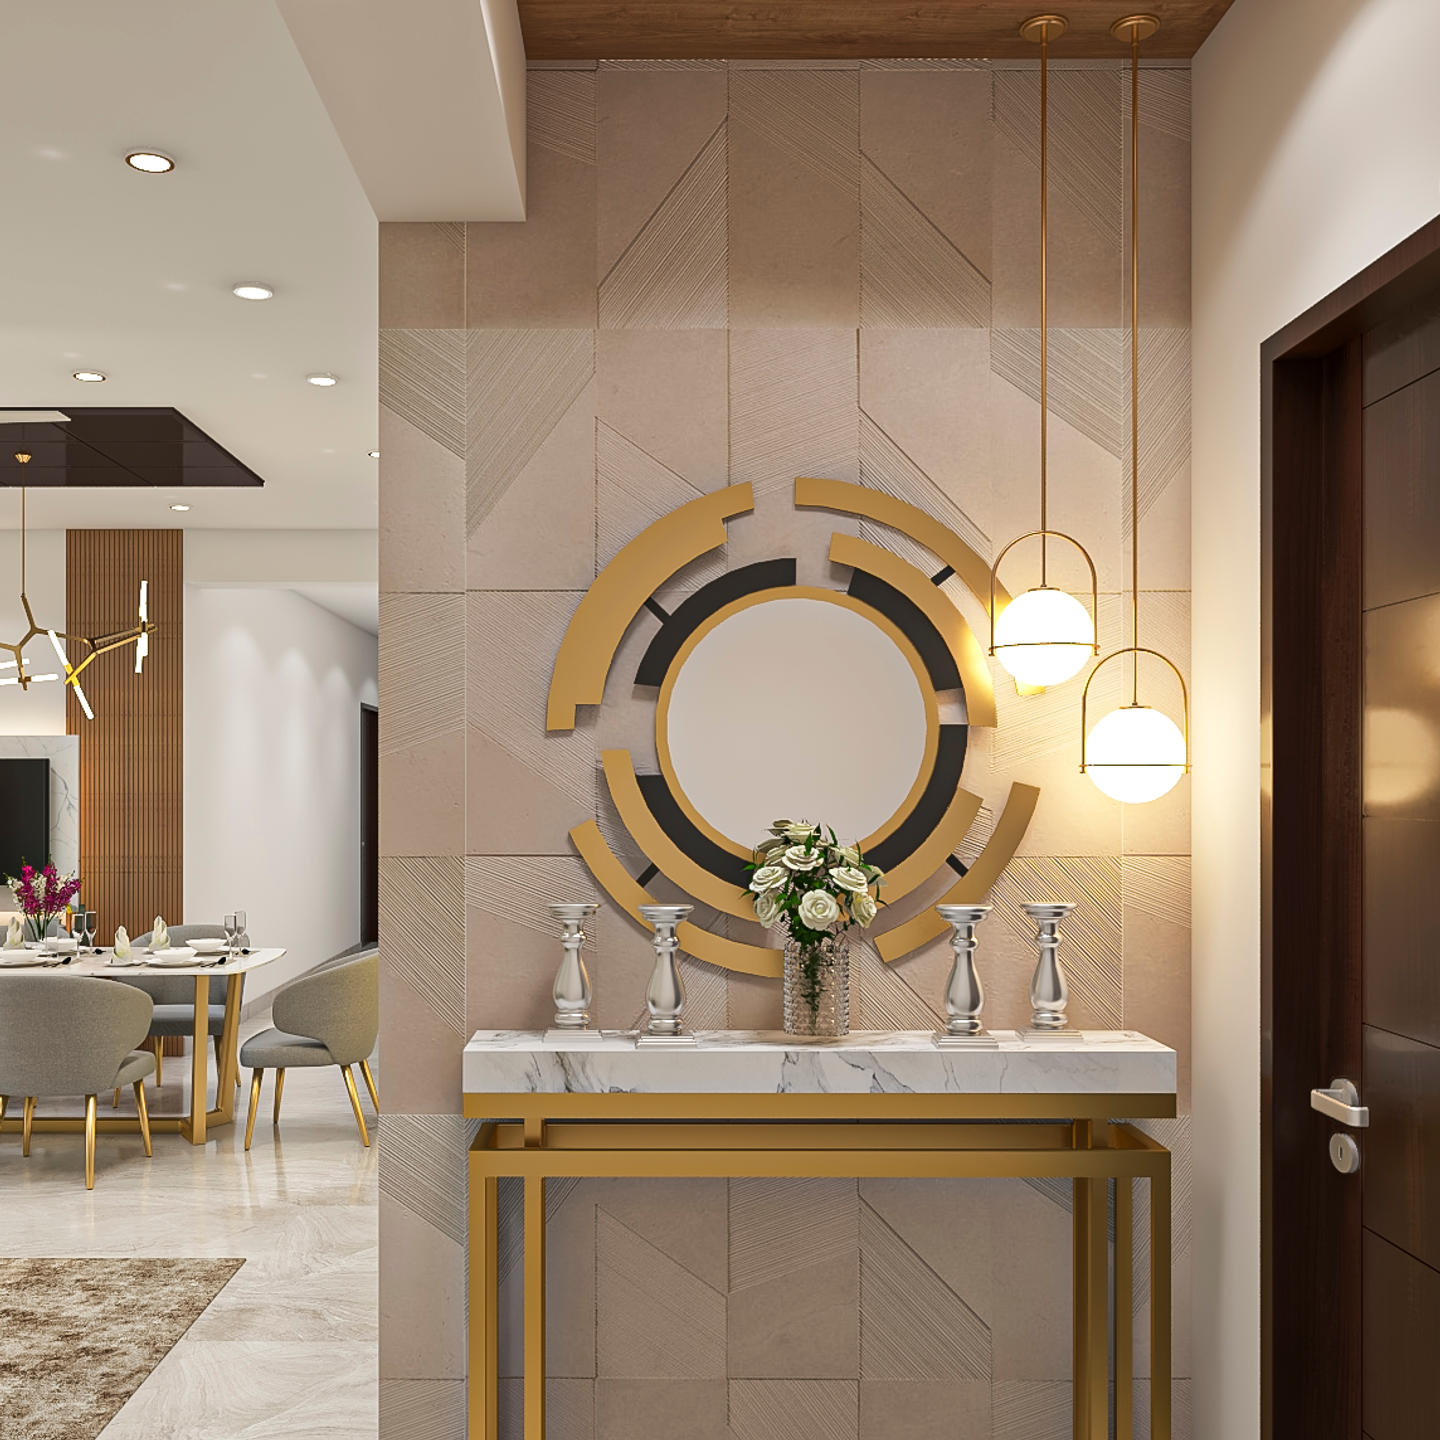 Luxurious Foyer Design With Round Mirror - Livspace